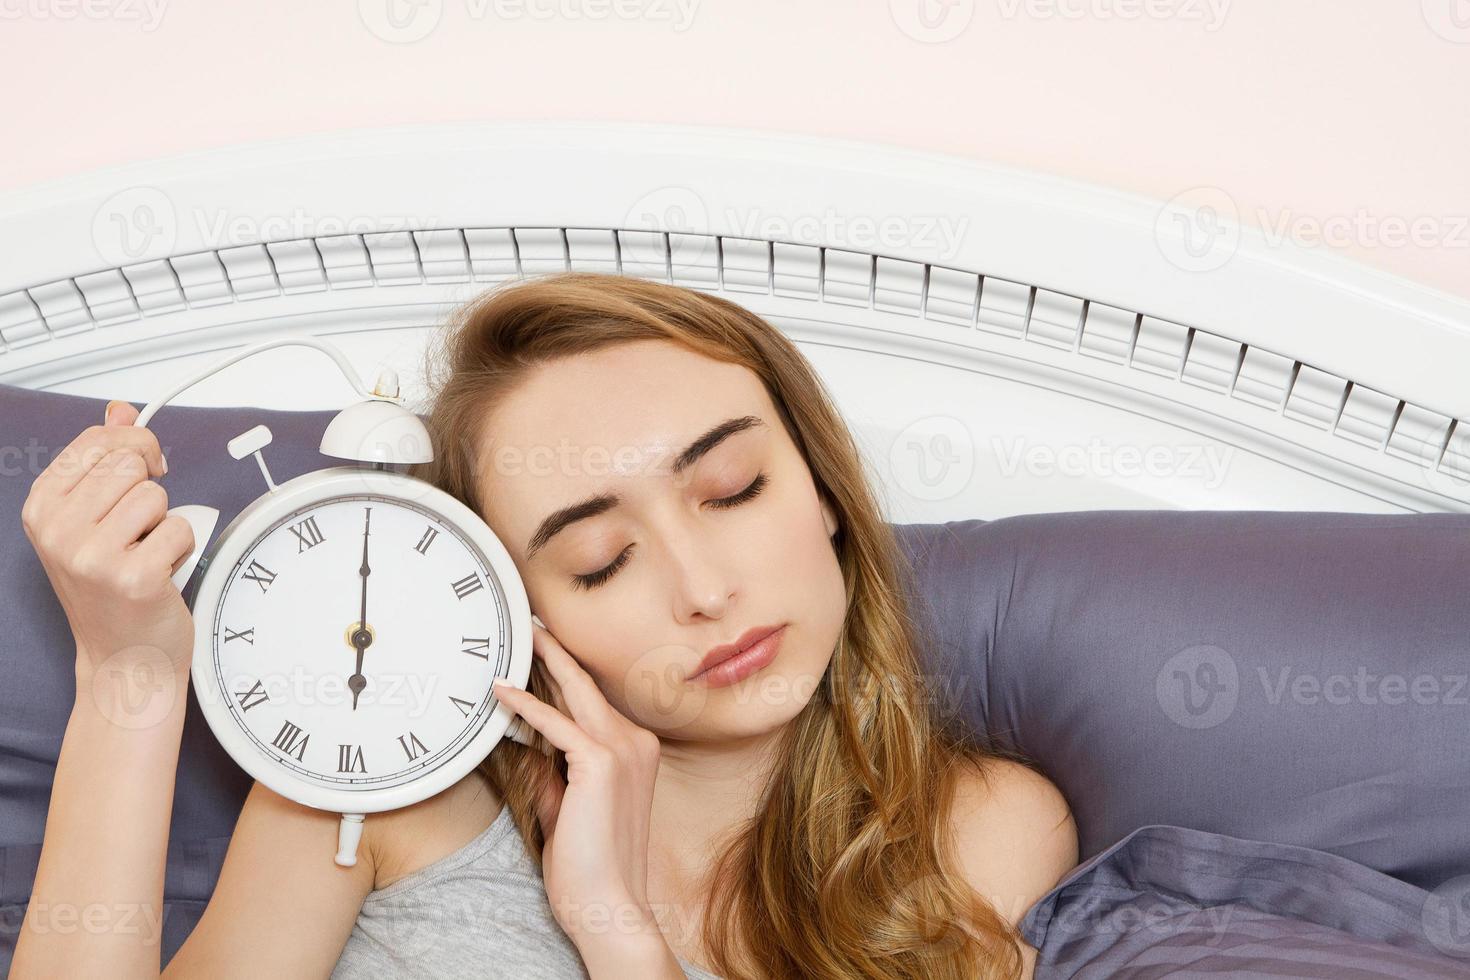 conceito de trabalho dormido demais, insônia de sono ruim - jovem linda garota sonolenta com os olhos fechados segura um relógio e deita-se em sua cama no quarto de manhã foto